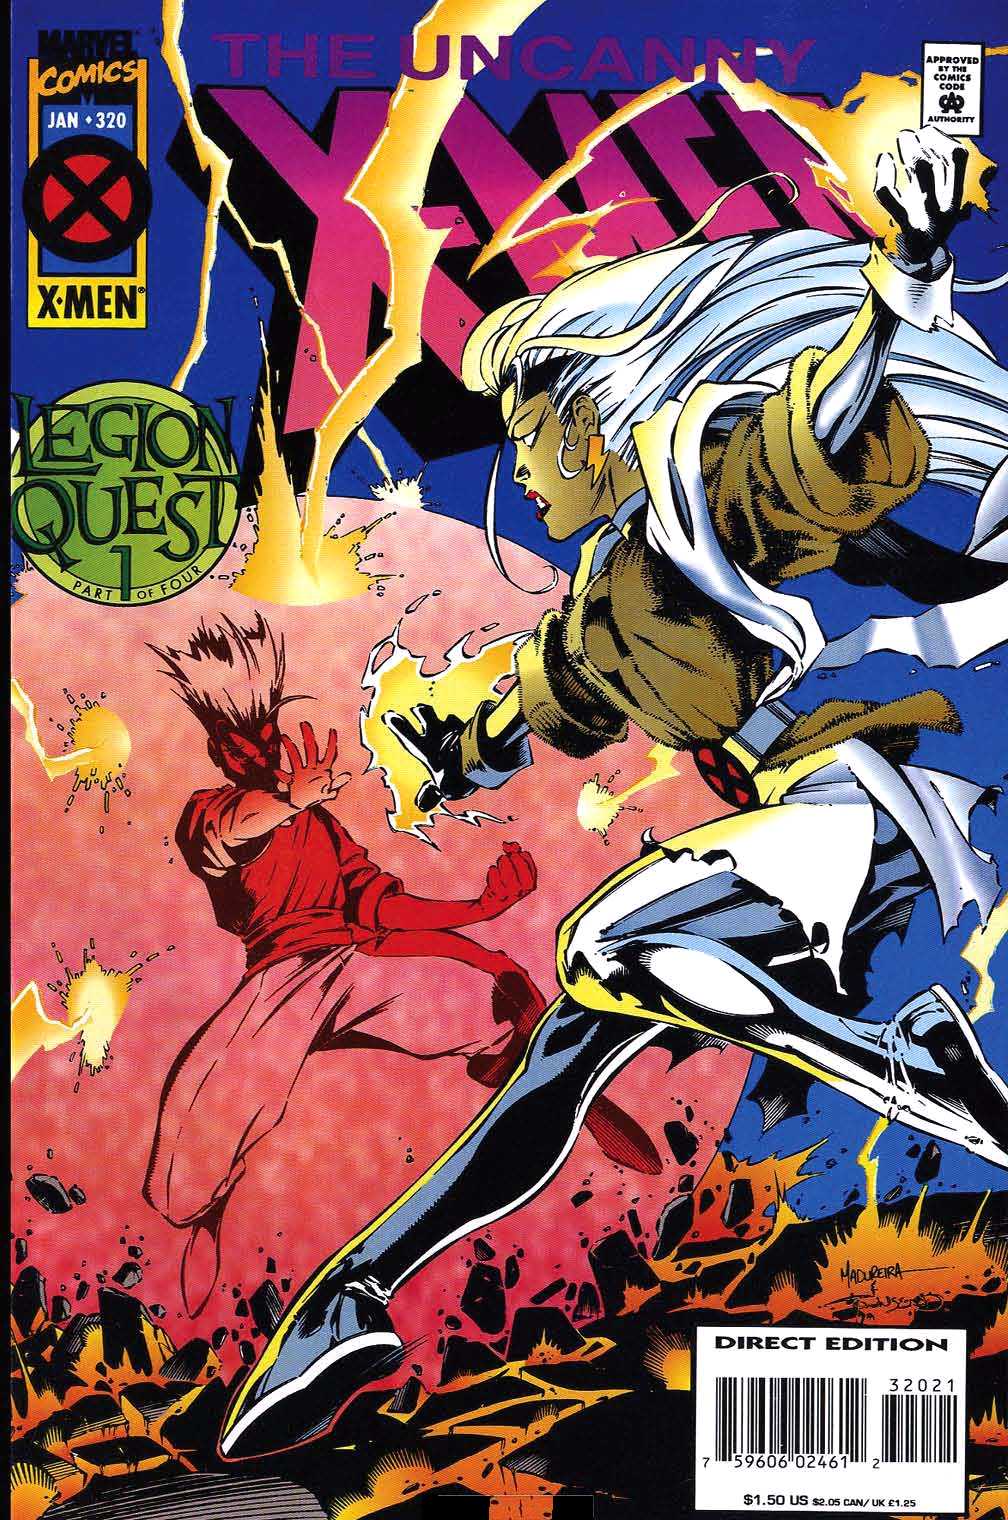 Couverture : Uncanny X-Men Vol. 1 320 (Legion Quest)